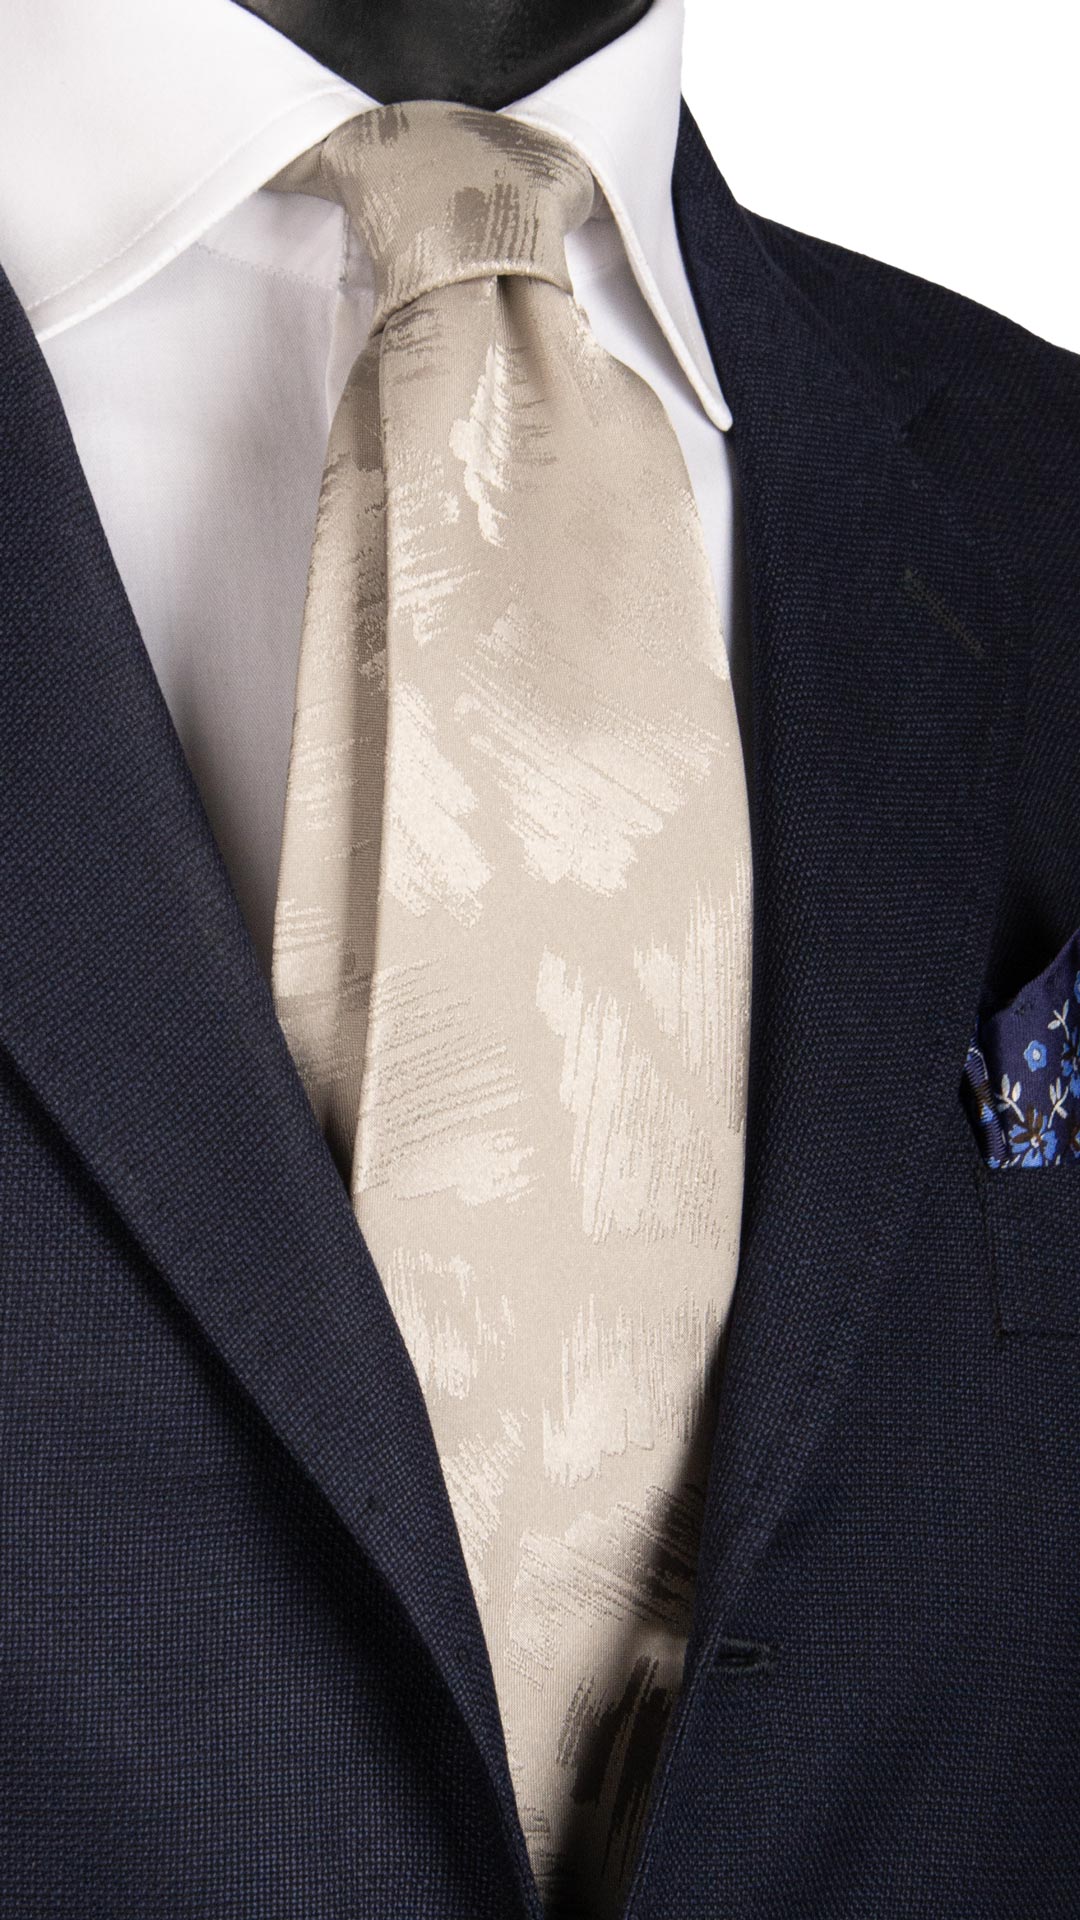 Cravatta da Cerimonia di Seta Grigio Argento Fantasia Tono su Tono CY6707 Made in Italy Graffeo Cravatte